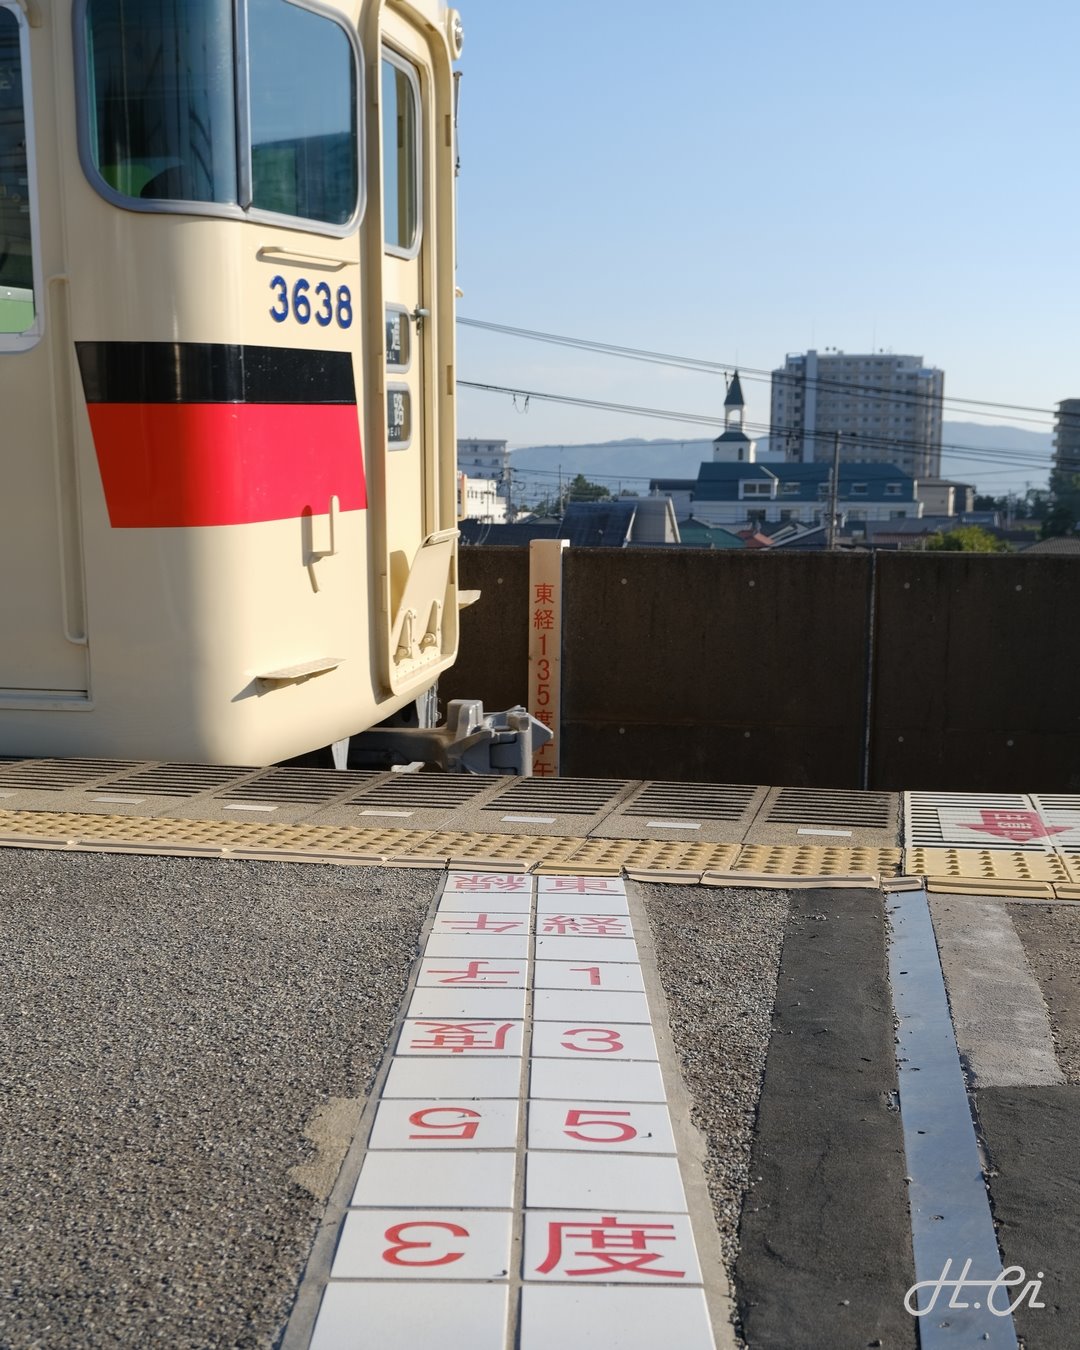 山陽電鉄 人丸前駅ホームの子午線の表示